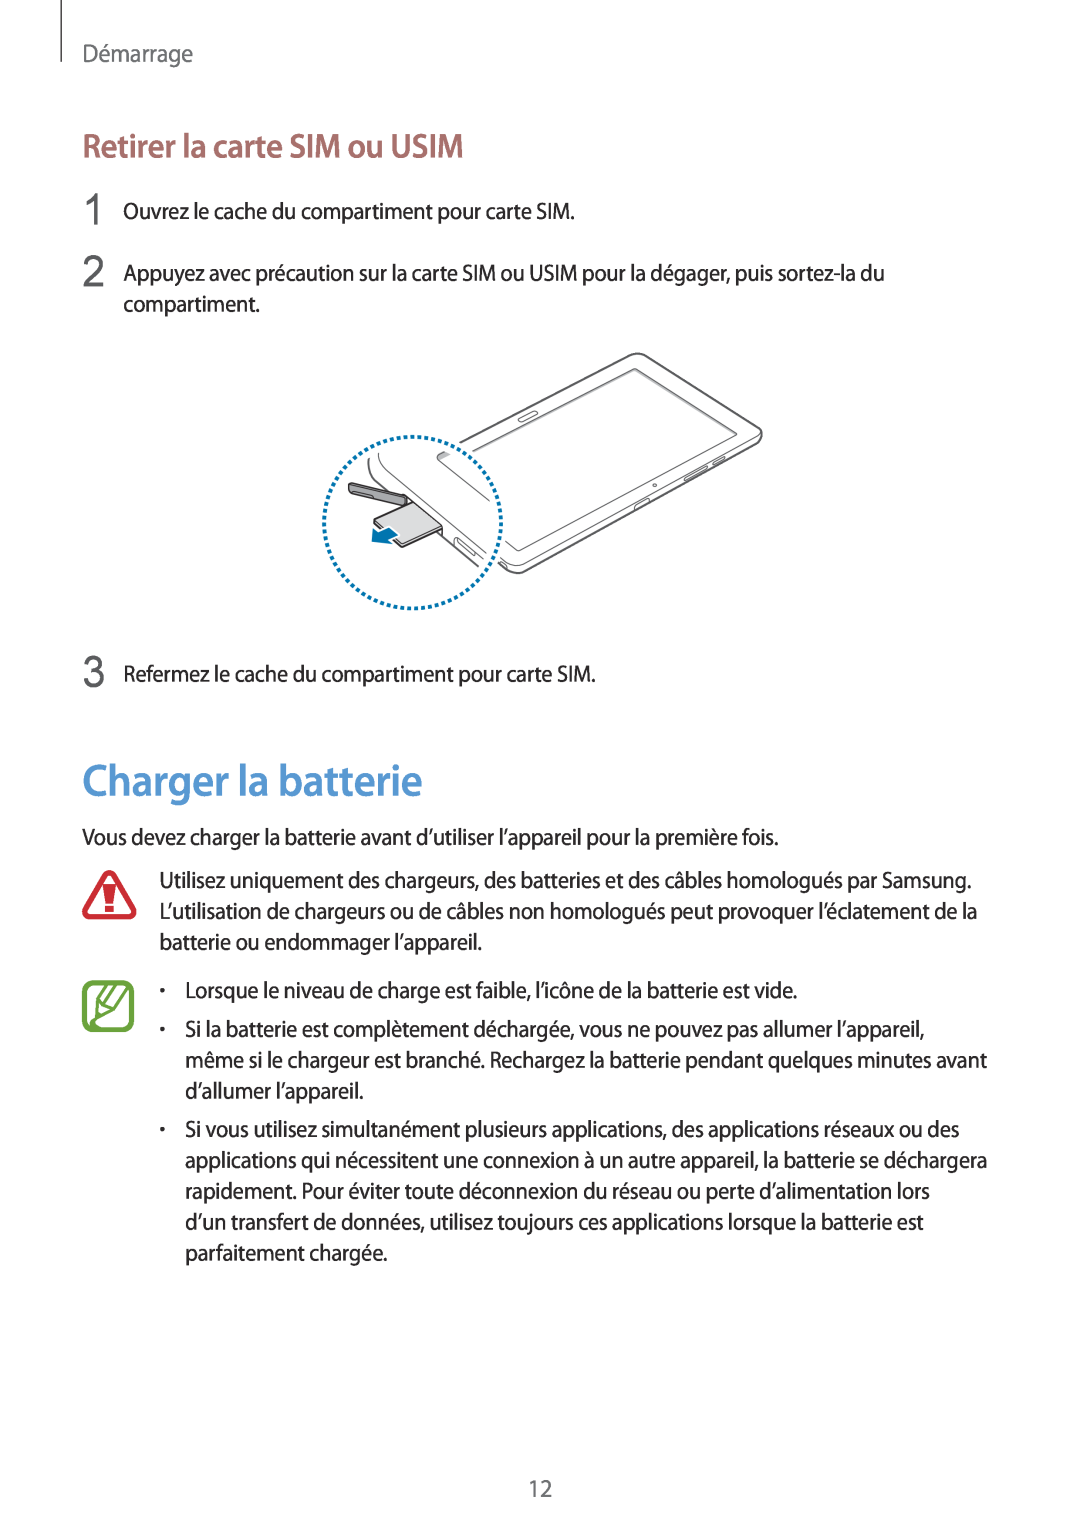 Samsung SM-P9050ZWAXEF, SM-P9050ZKAXEF manual Charger la batterie, Retirer la carte SIM ou USIM, Démarrage 